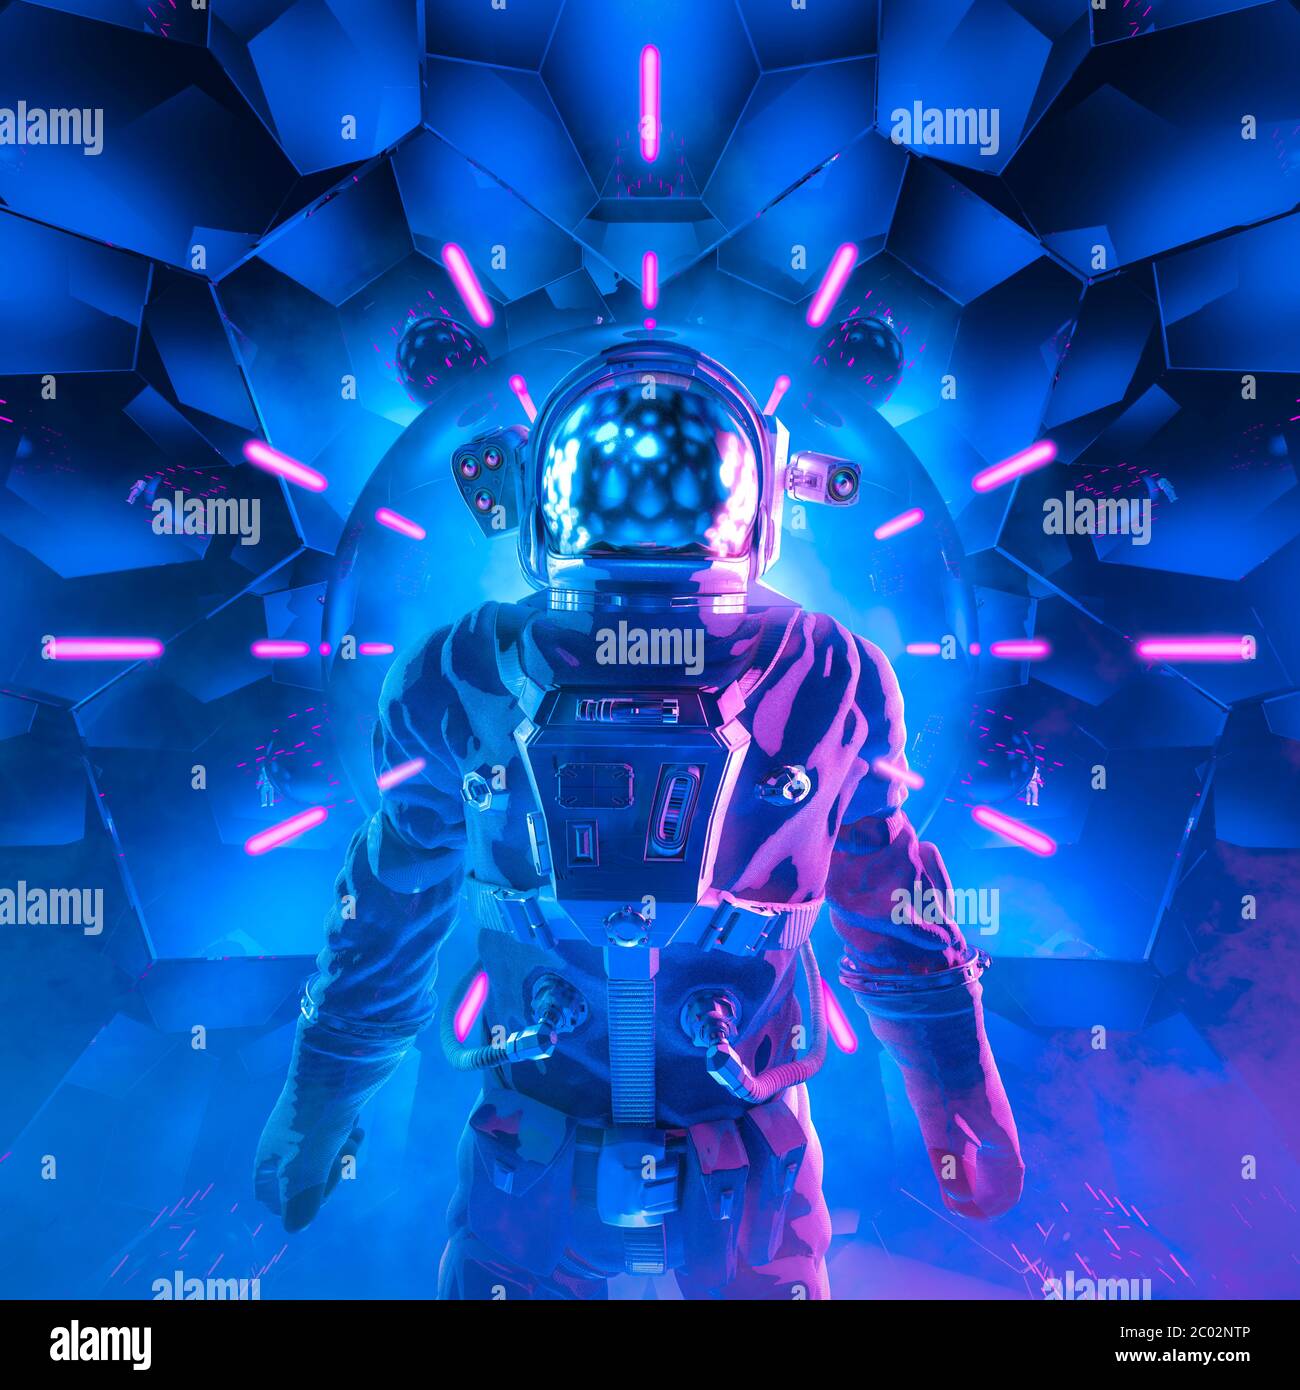 Reise in die Unendlichkeit / 3D-Illustration der Science-Fiction-Szene mit geheimnisvollen Astronautenfigur im Raumanzug umgeben von leuchtenden Neonlichtern Stockfoto